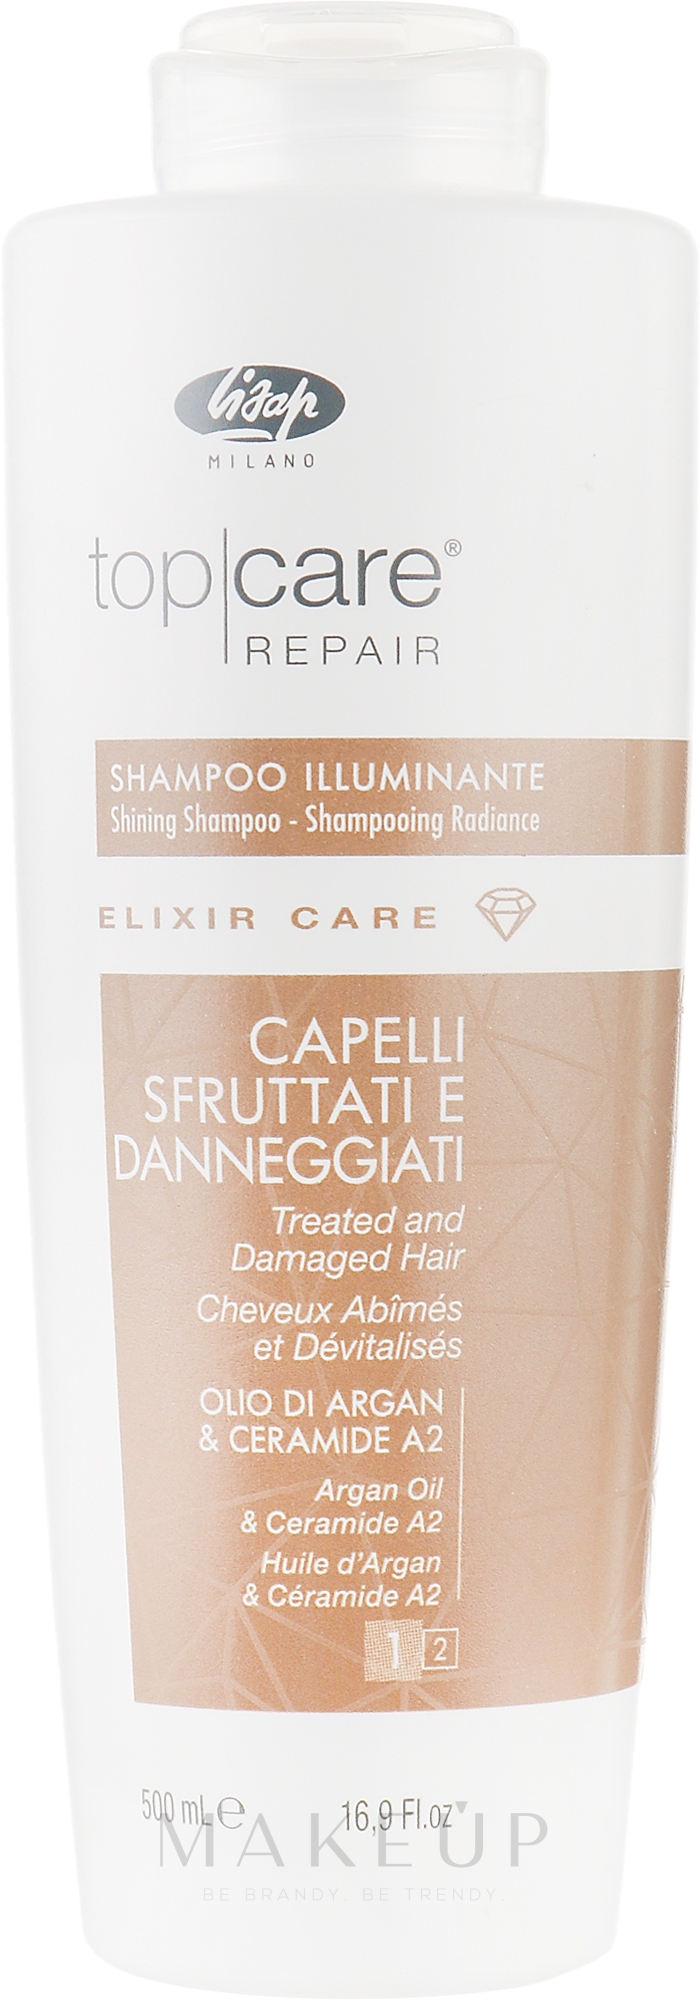 Shampoo für mehr Glanz mit Arganöl und Ceramiden - Lisap Top Care Repair Elixir Care Shining Shampoo — Bild 500 ml